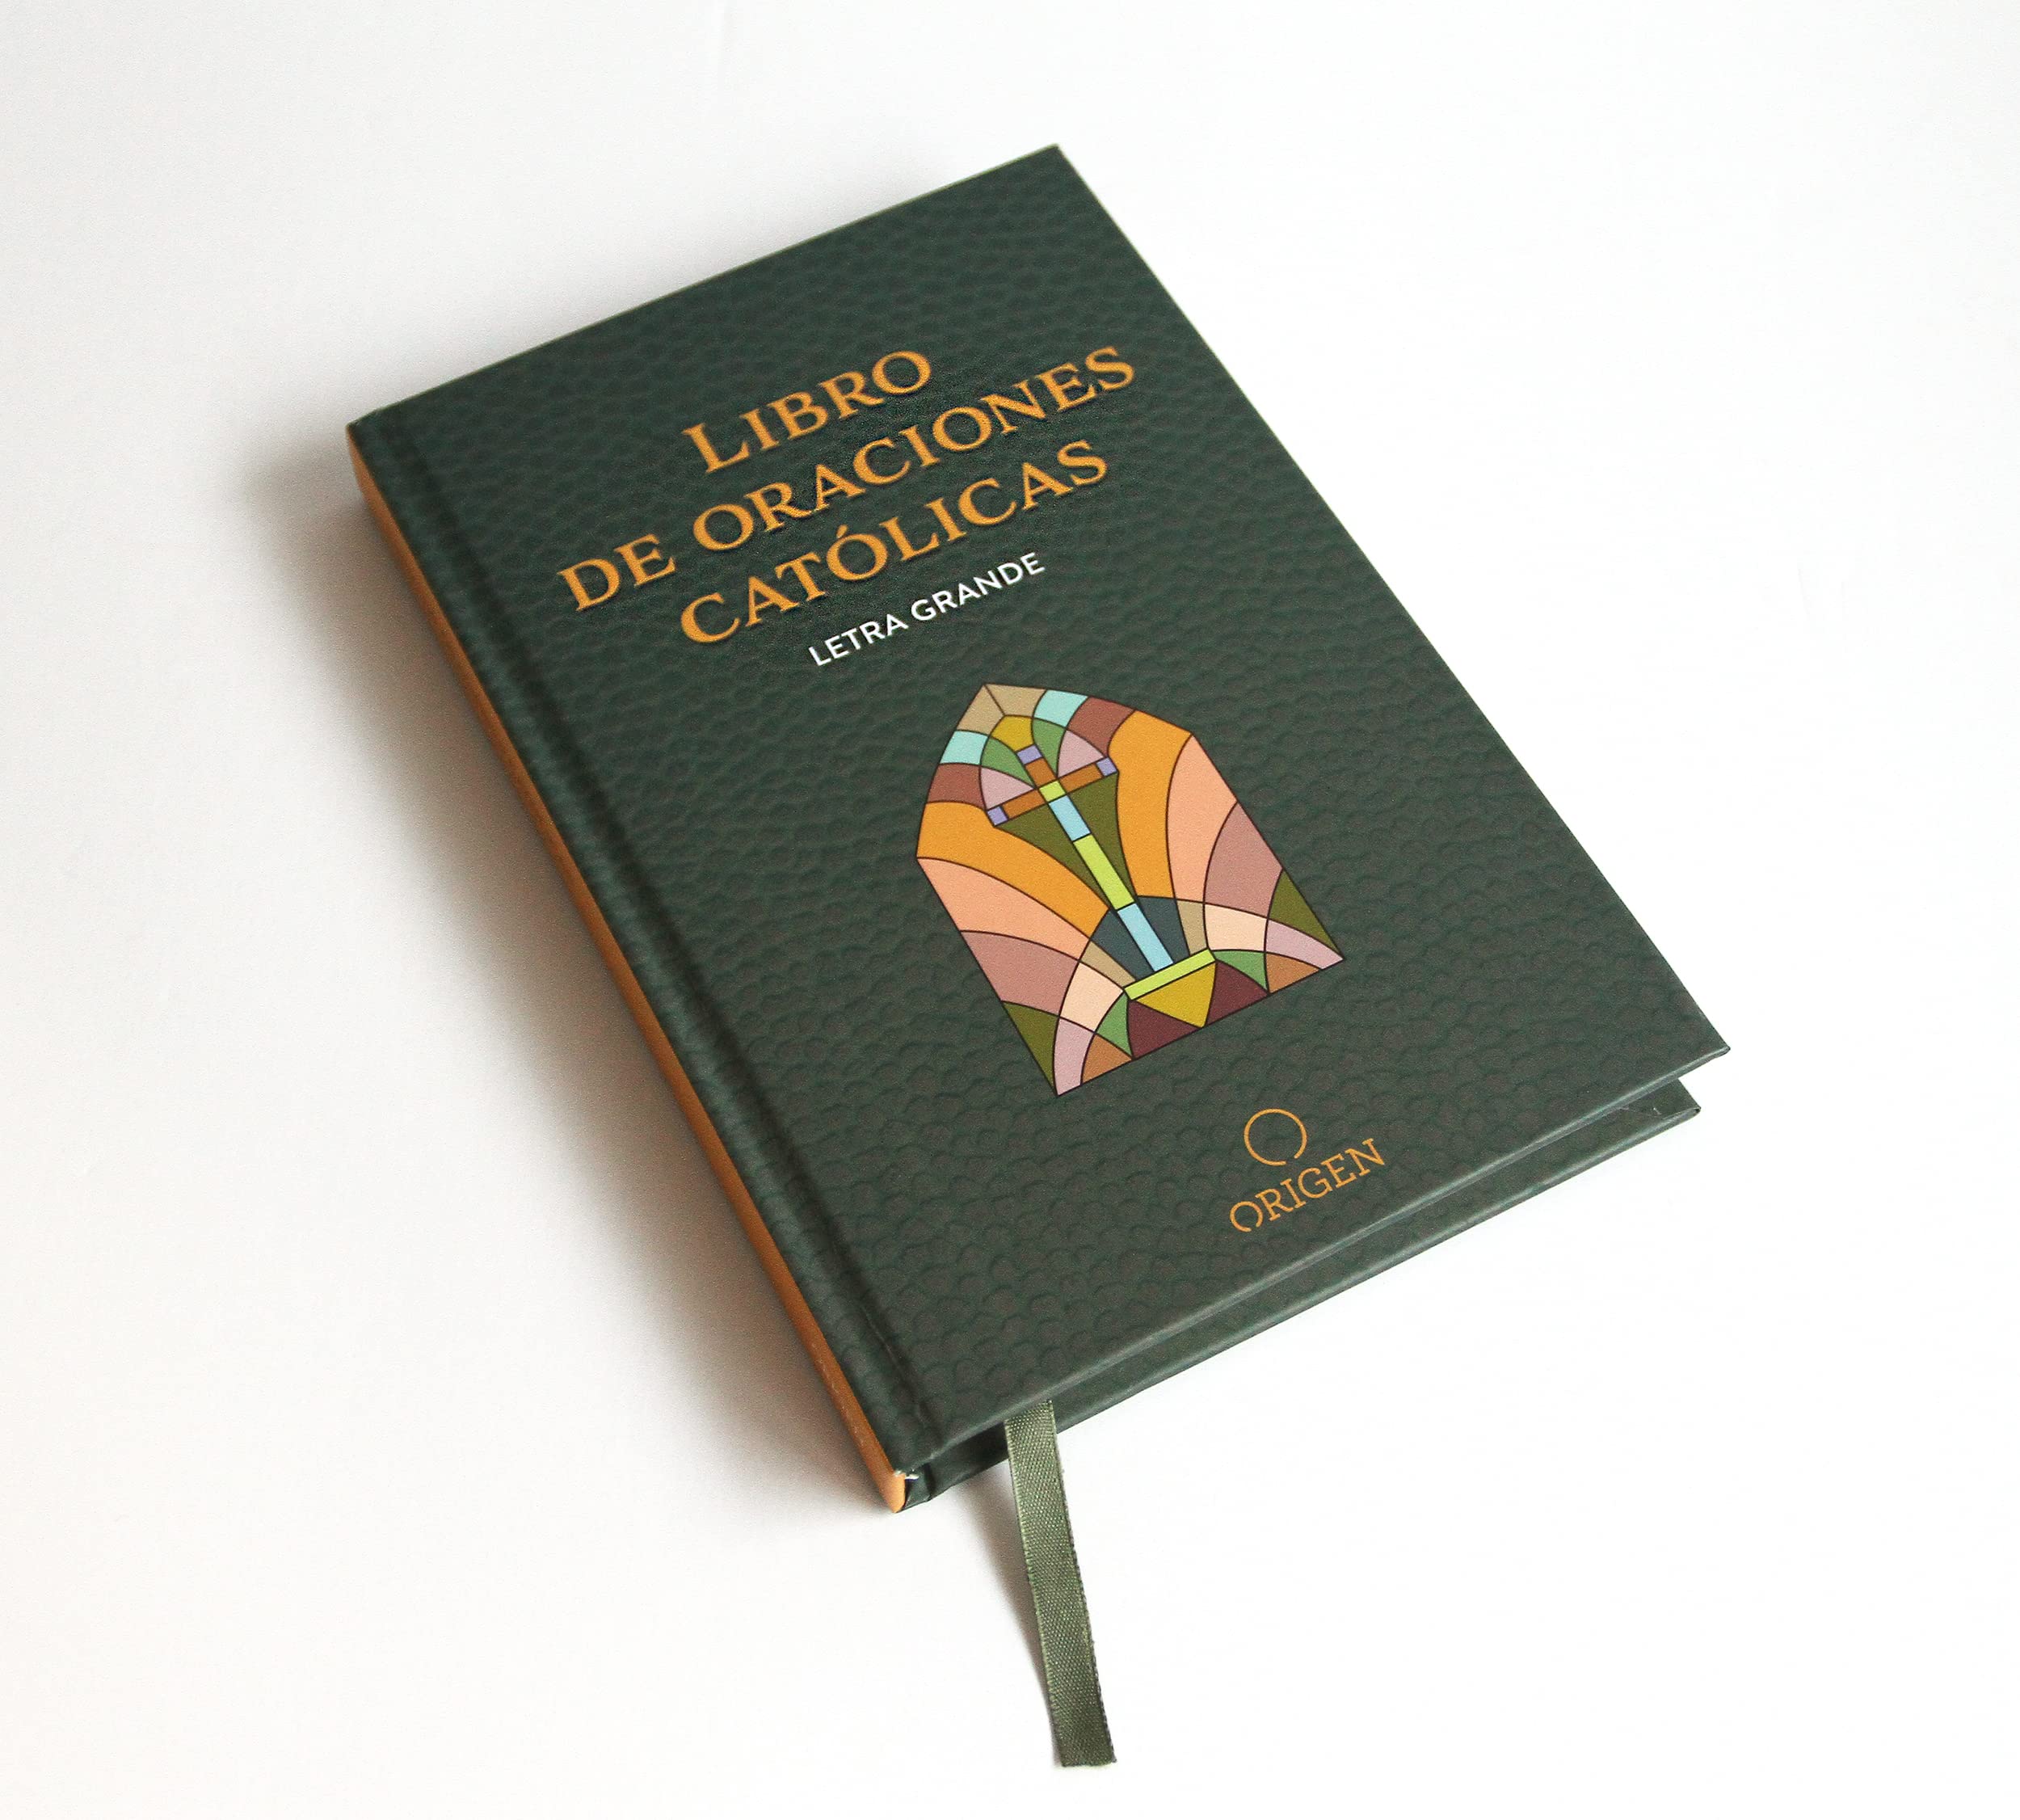 Libro de las oraciones católicas (letra grande) / Catholic Book of Prayers